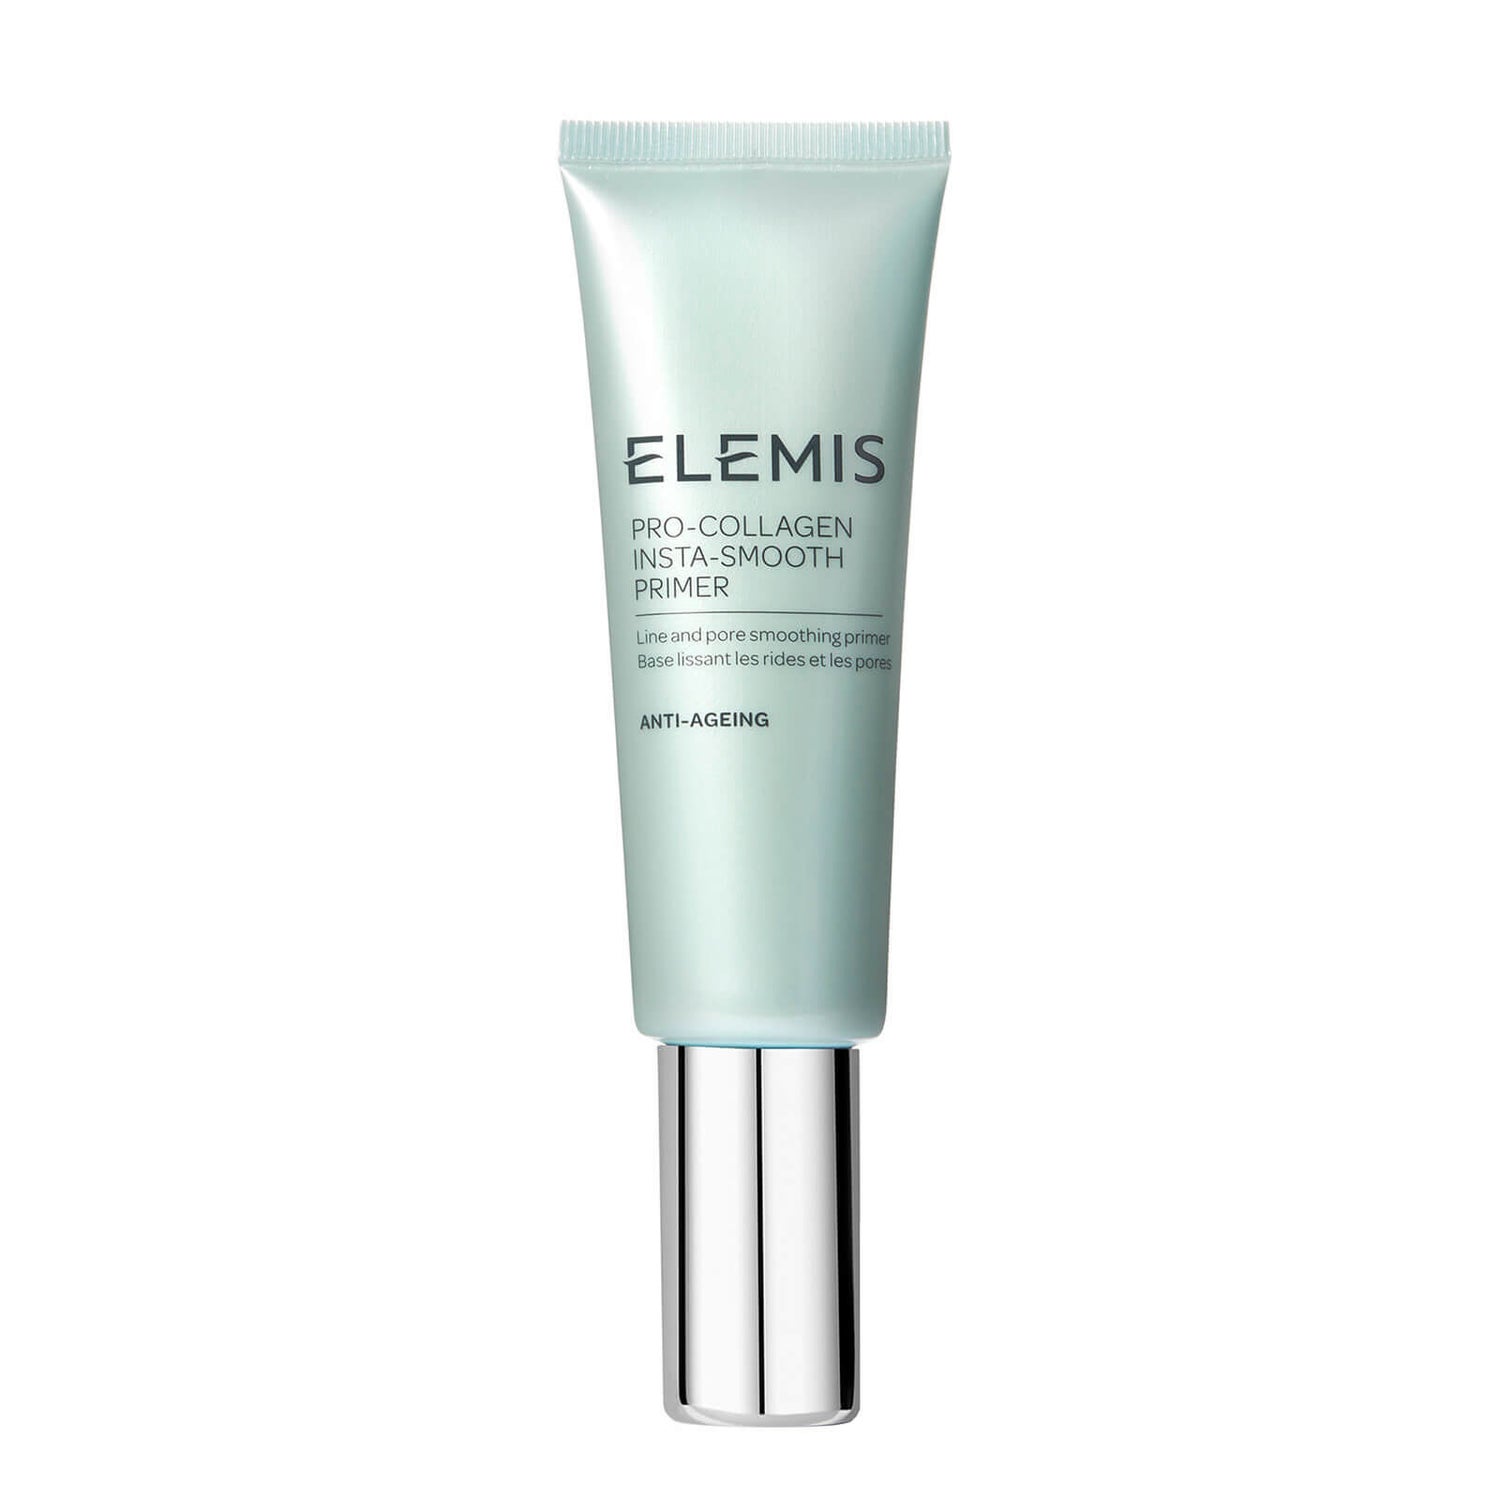 ELEMIS Pro-Collagen Insta-Smooth Primer (1.6 fl. oz.)